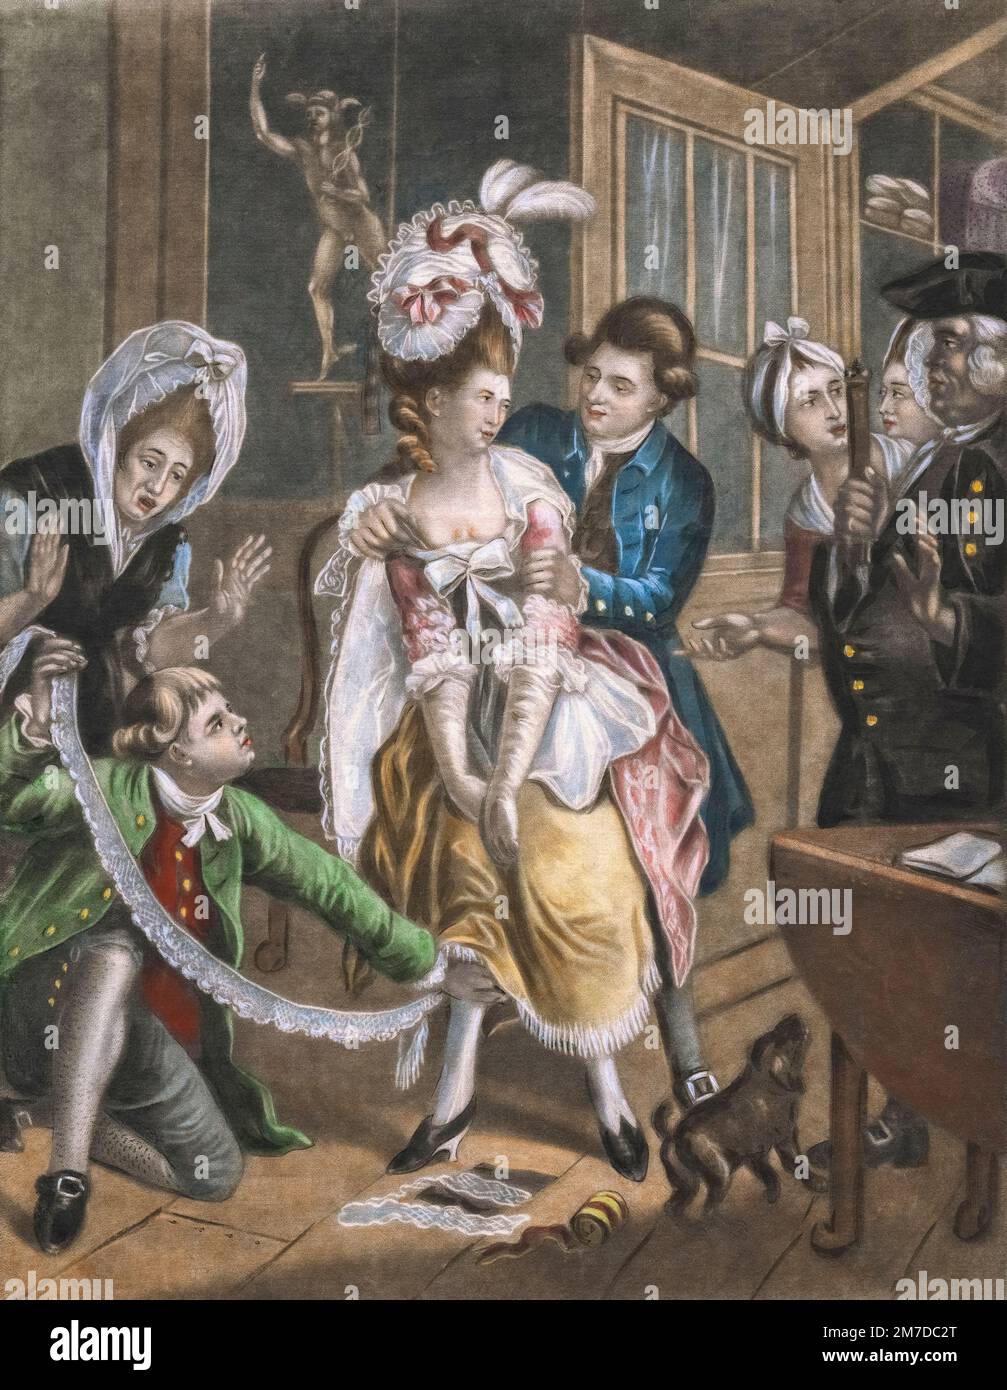 Une femme de magasiner est prise dans la loi. Elle avait dissimulé des longueurs de dentelle sous ses vêtements. Après un travail de John Collett, publié en 1787. Banque D'Images